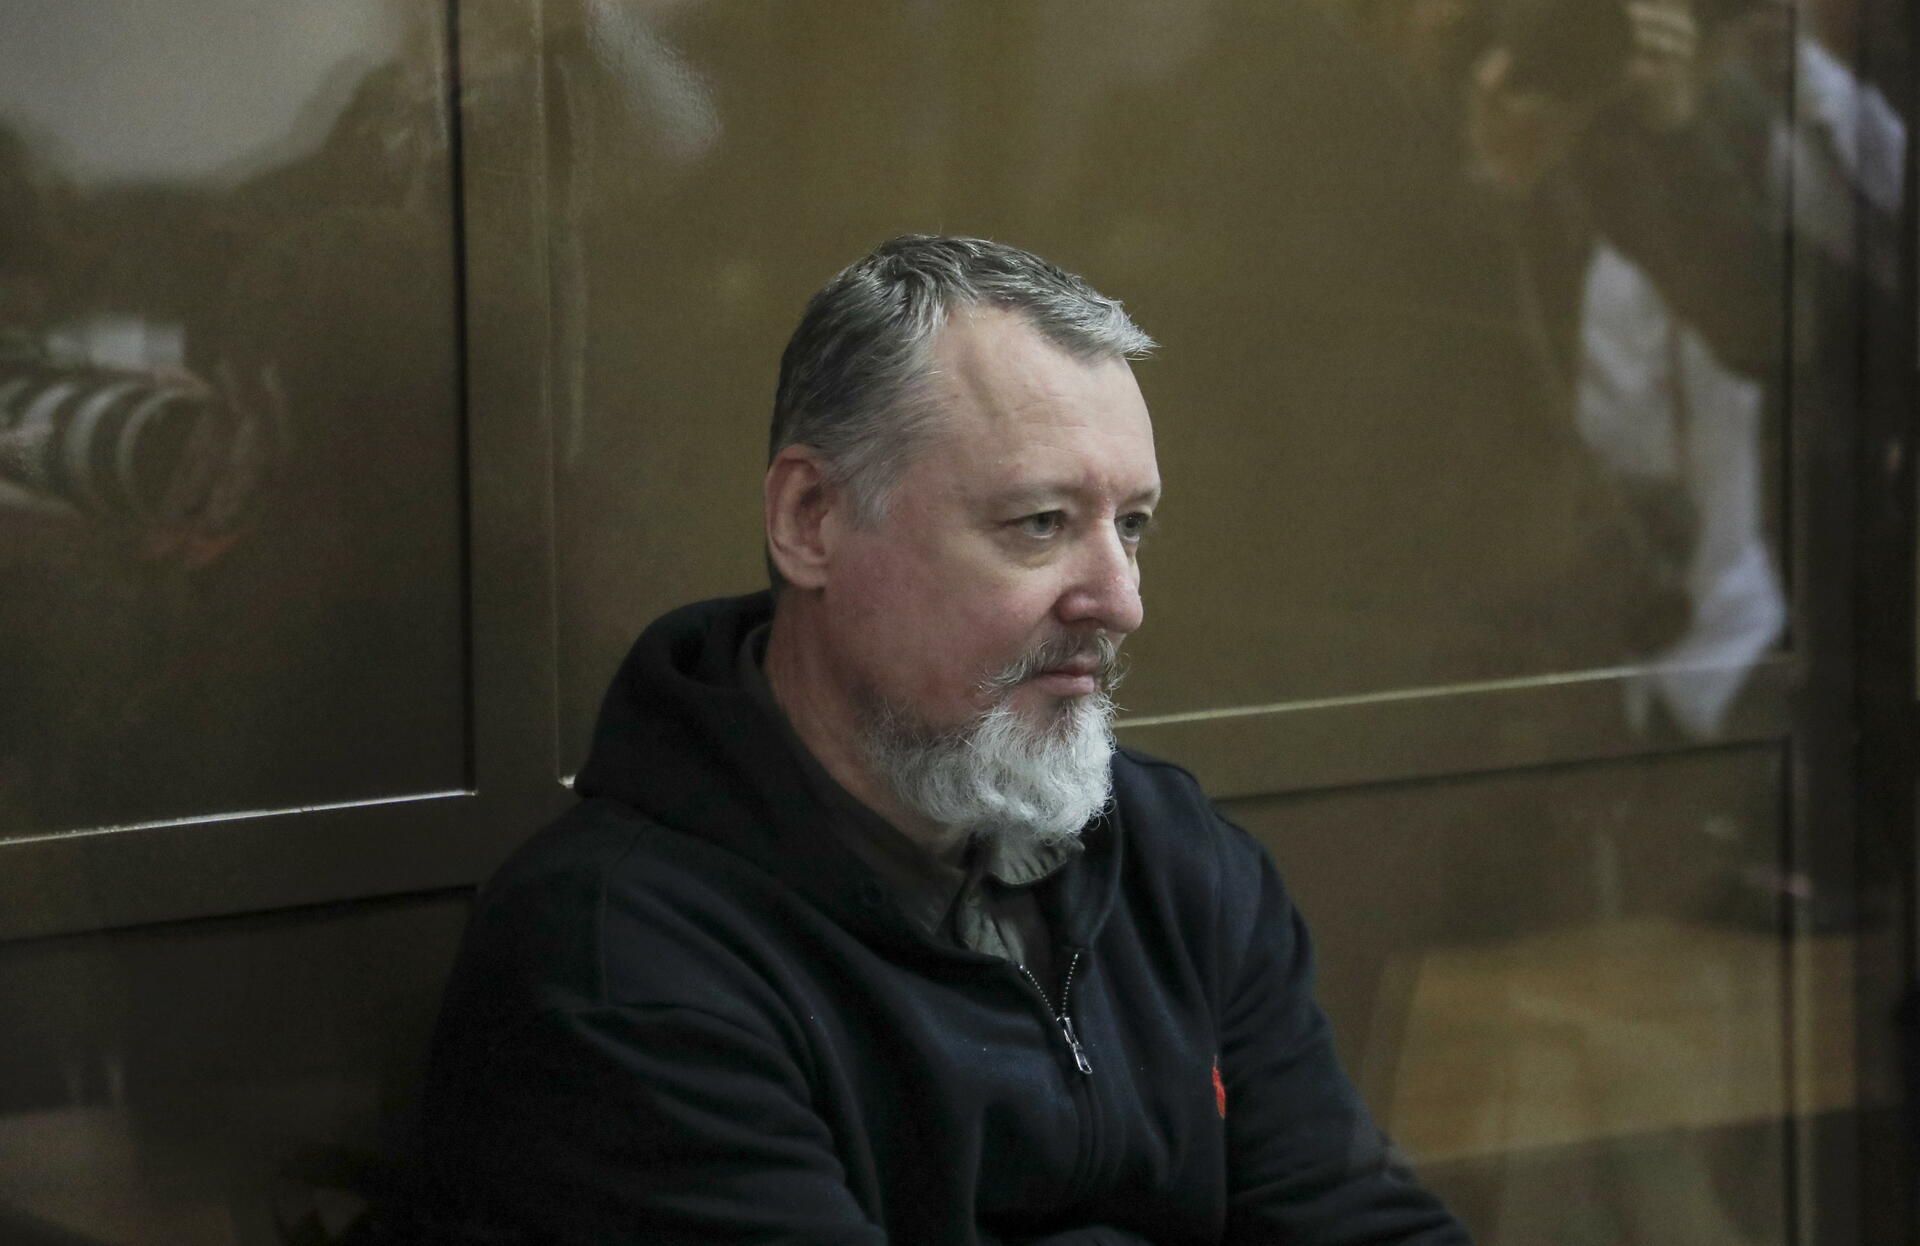 'Strelkov' lideró en abril de 2014 en Donetsk la insurrección armada que condujo a la guerra del Donbás, antesala de la actual contienda en Ucrania. (ARCHIVO)